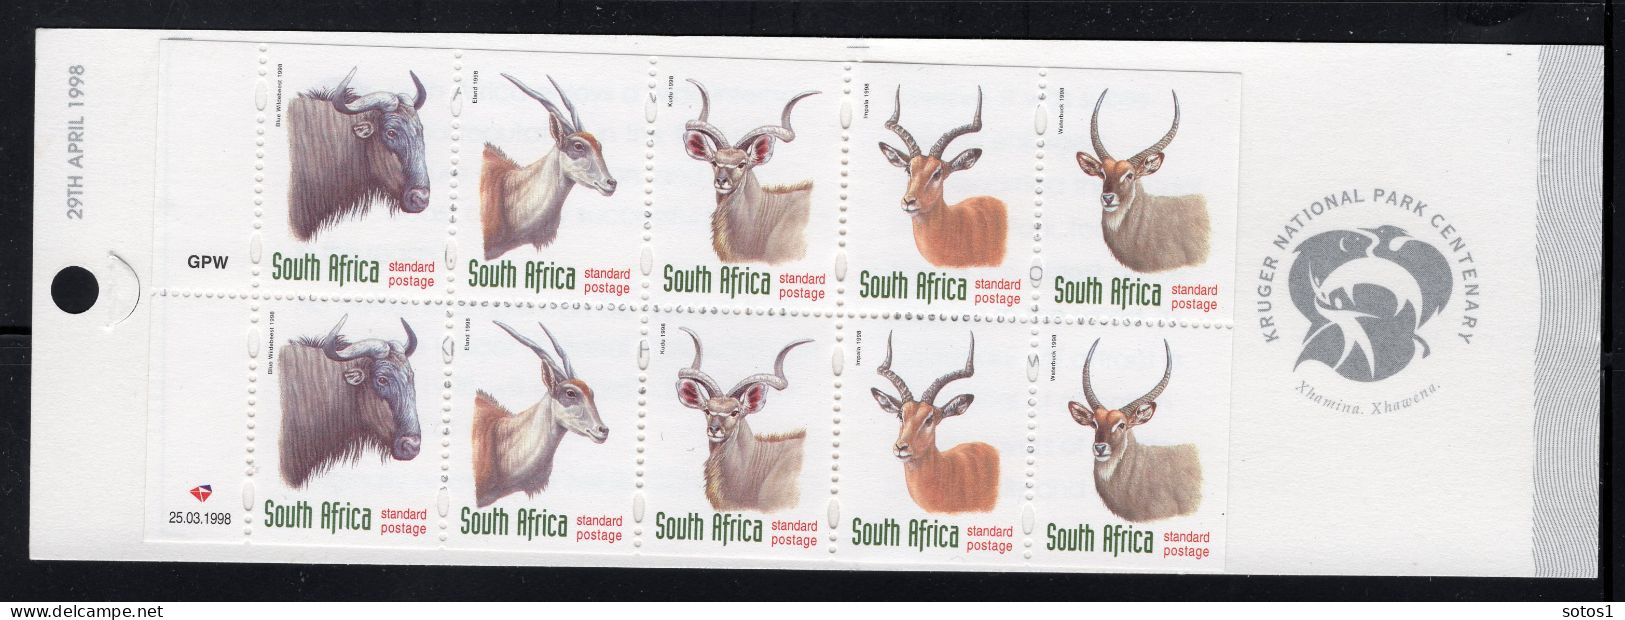 ZUID AFRIKA Yt. C998a MNH Postzegelboekje 1998 - Booklets